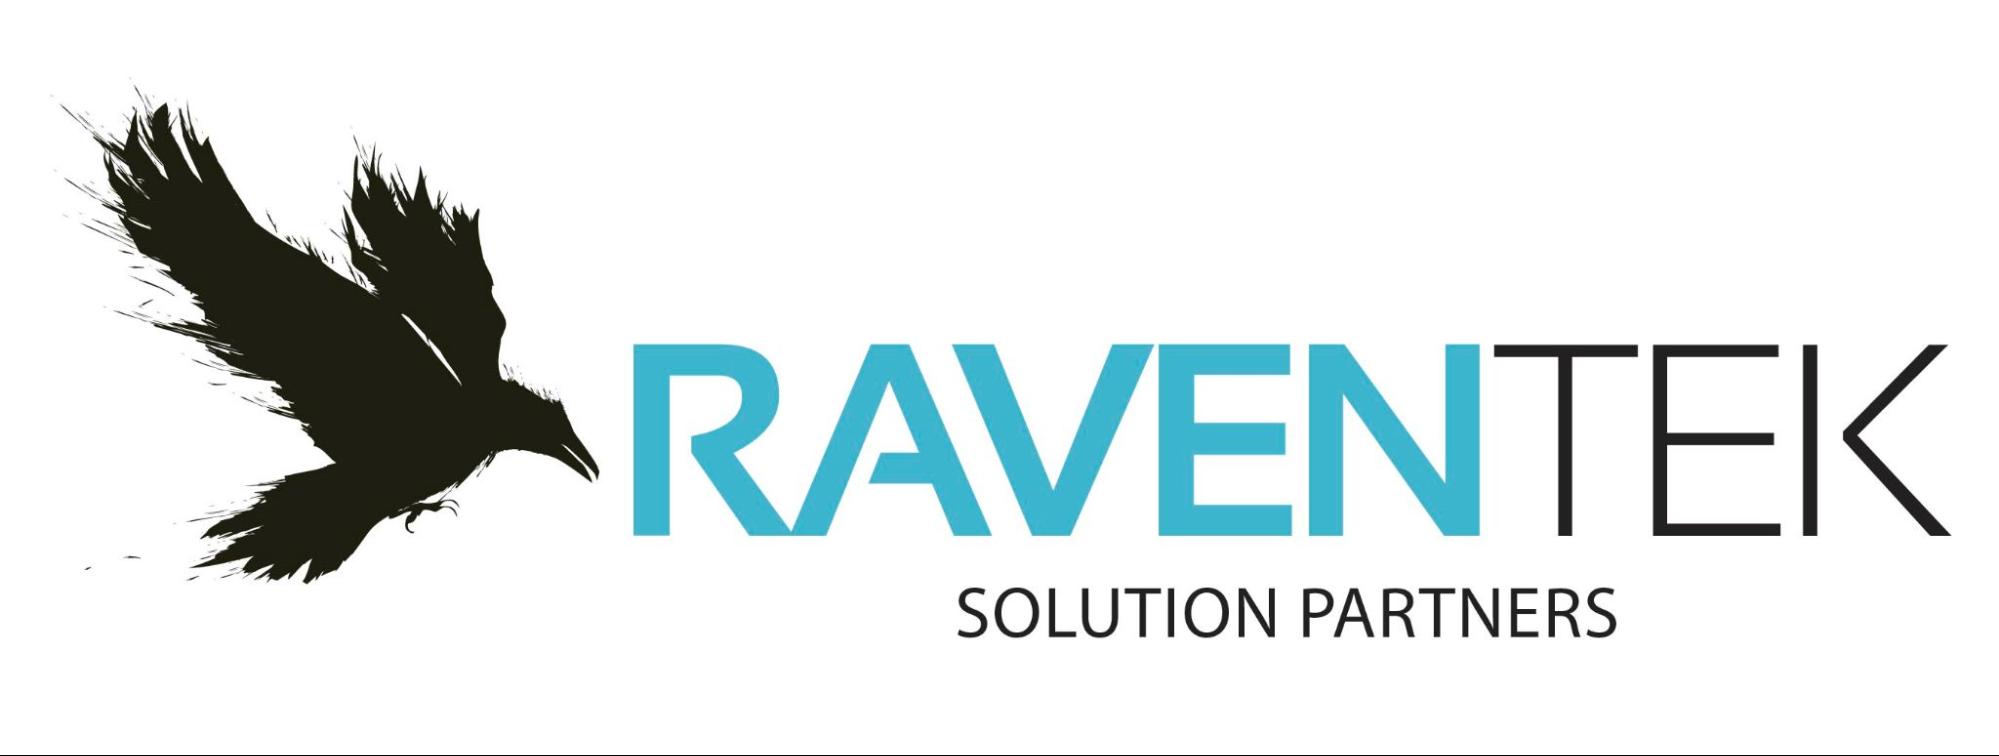 RavenTek Solution Partners